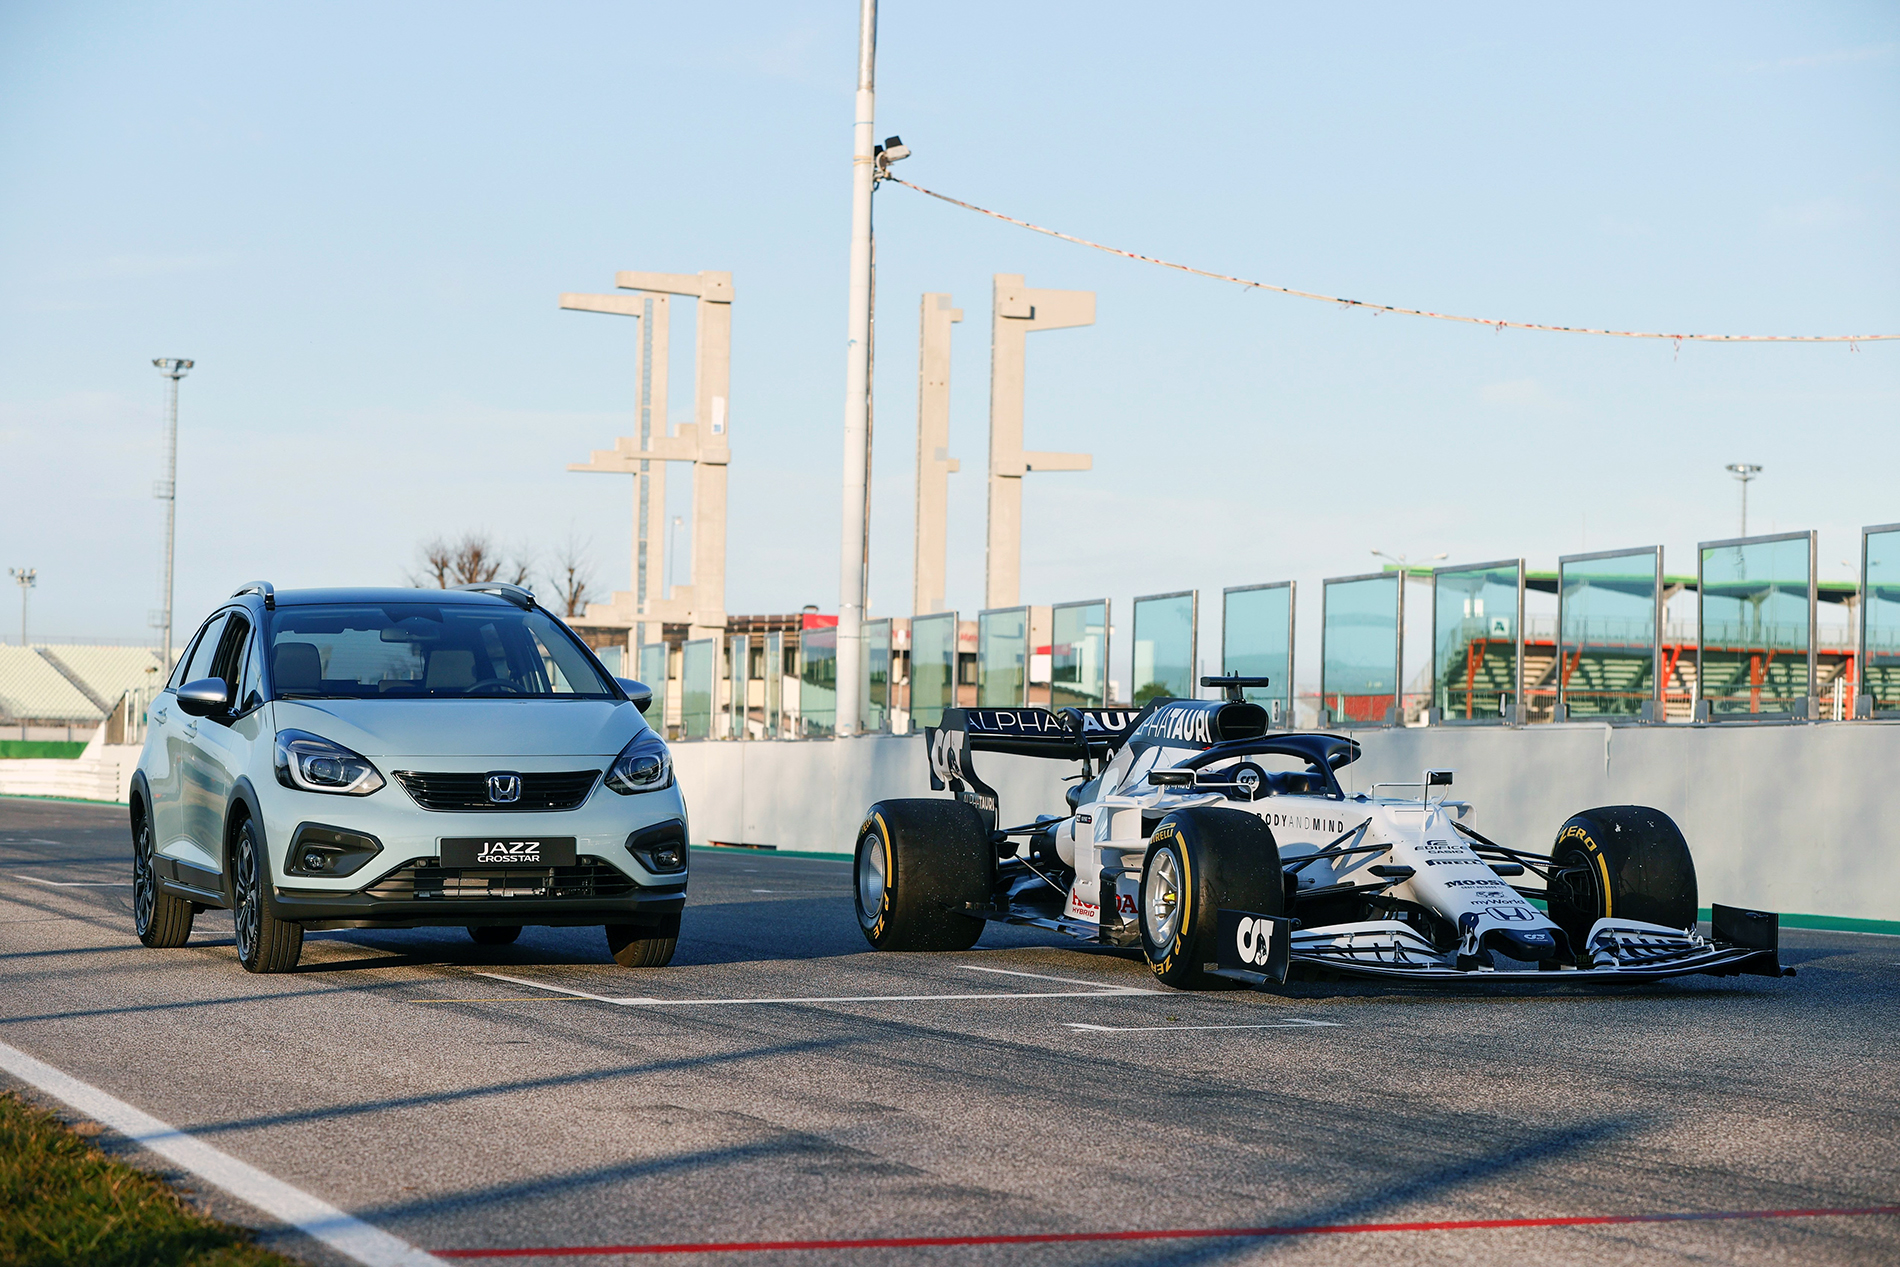 Nowa Honda Jazz inspirowana doświadczeniami technologii hybrydowej w Formule 1